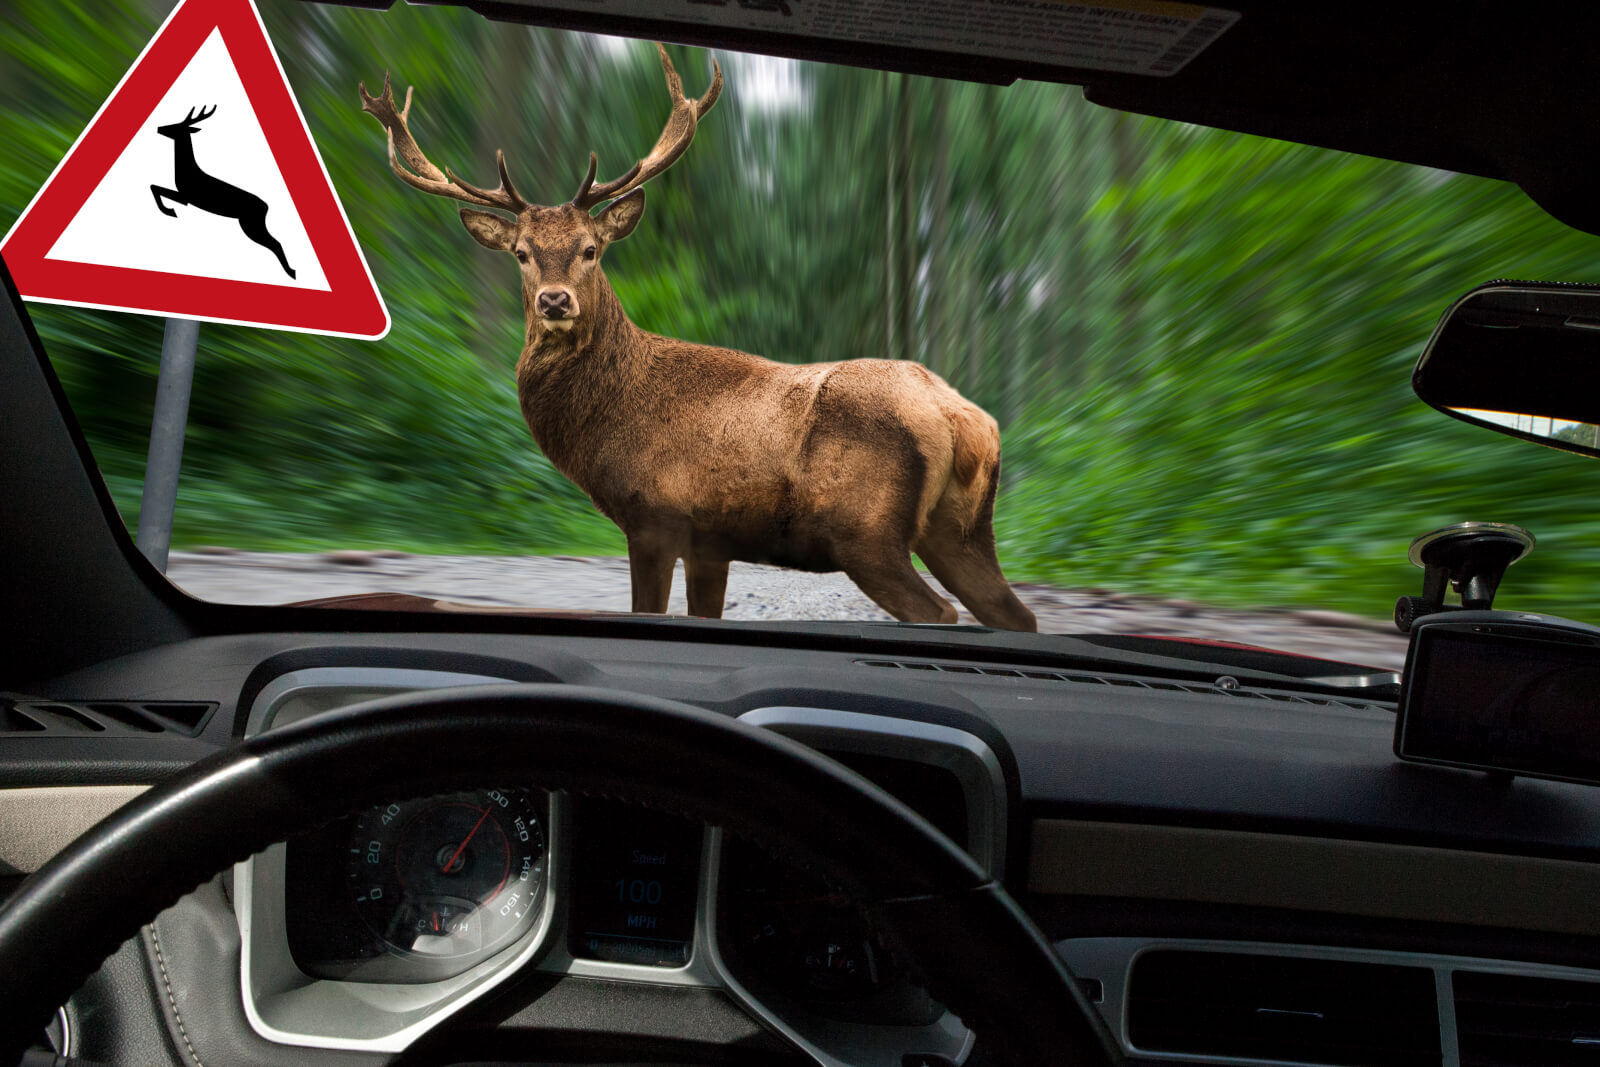 【ロードキル】車で動物を轢いたときの対処法 法律・罰金や保険について Ancar Channel